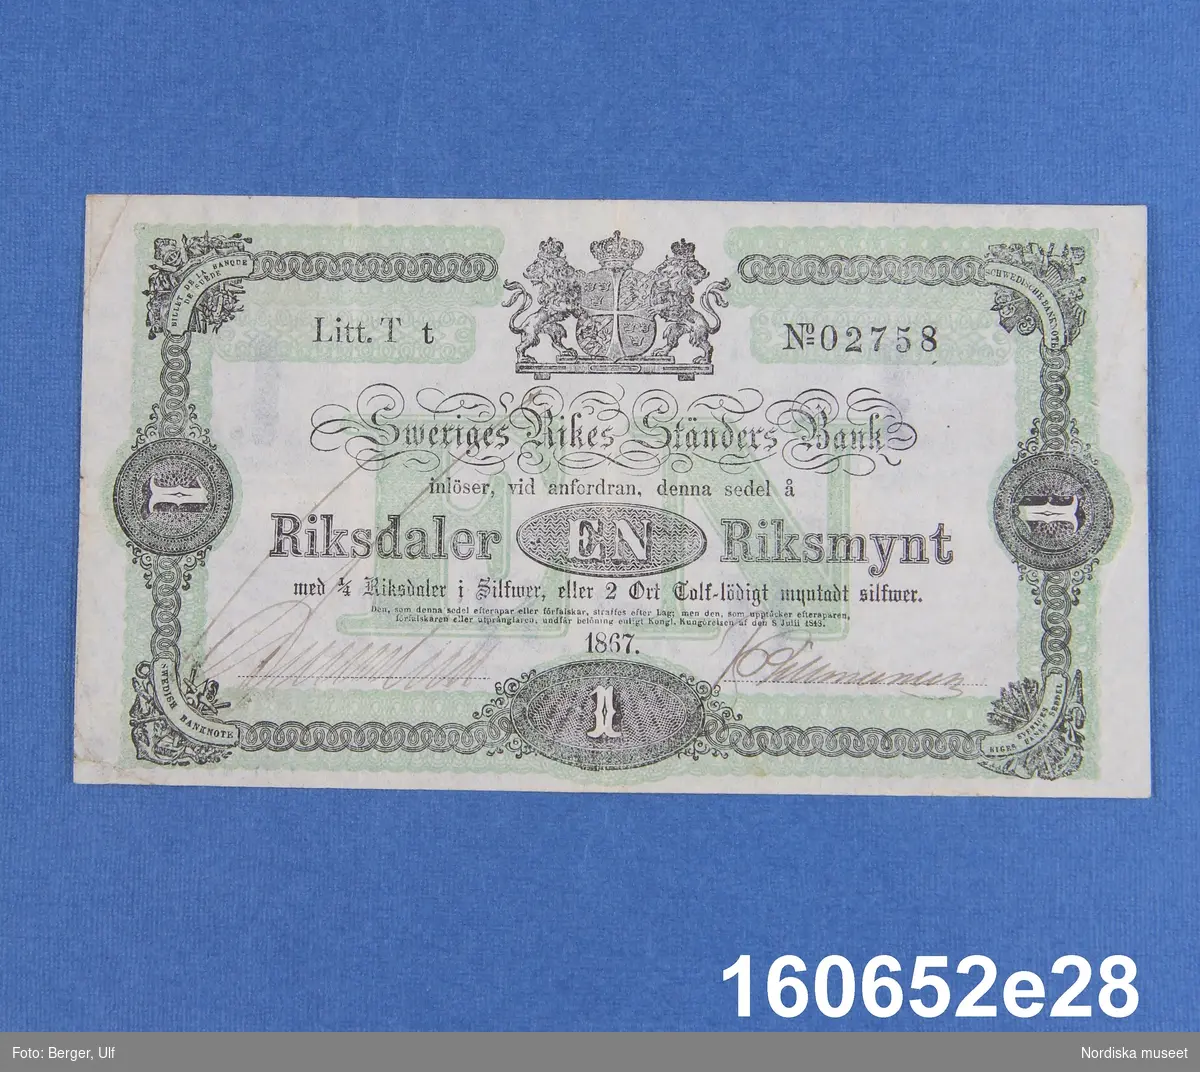 Sveriges Rikes Ständers Bank, 1 riksdaler riksmynt. Daterad 1867, litt T t nr 02758.